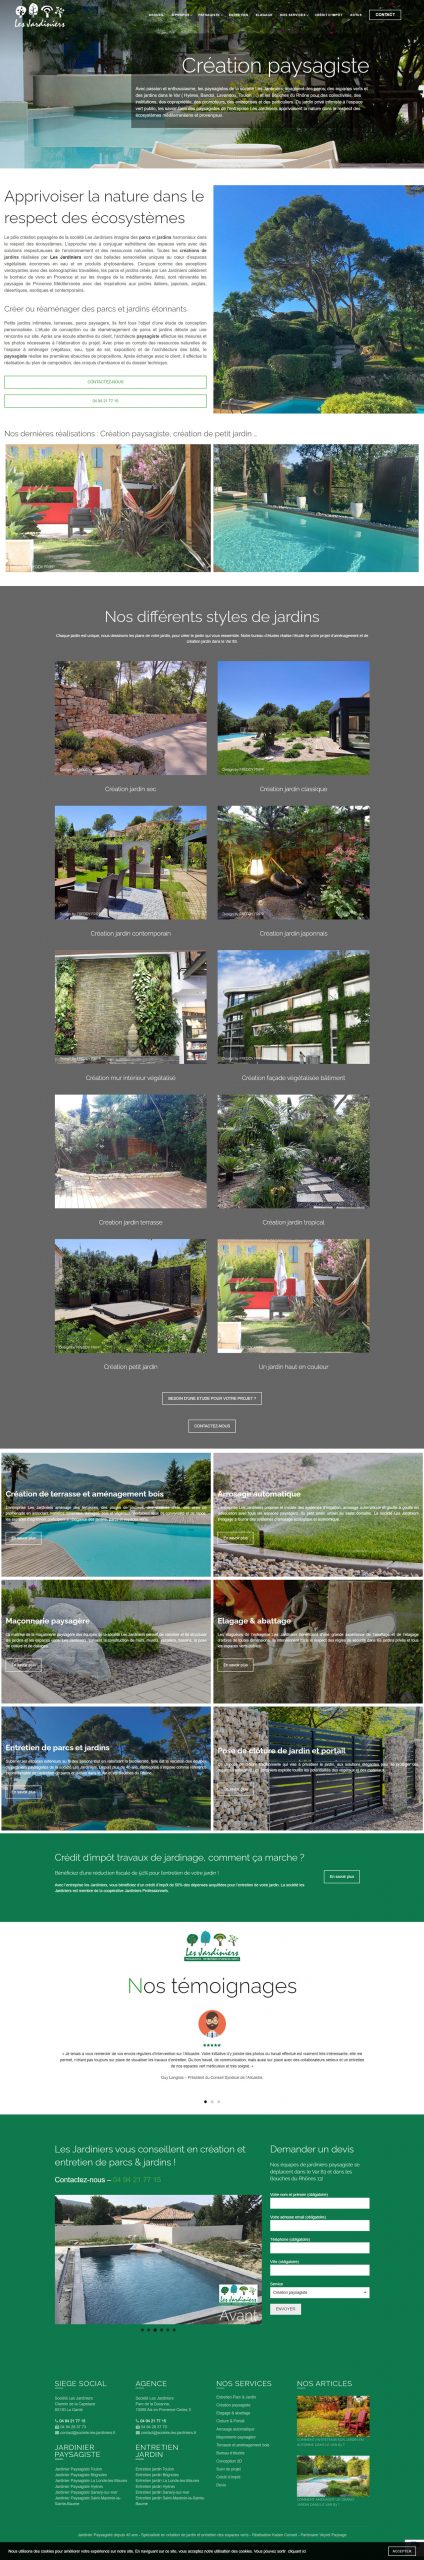 Création site web entreprise jardinage